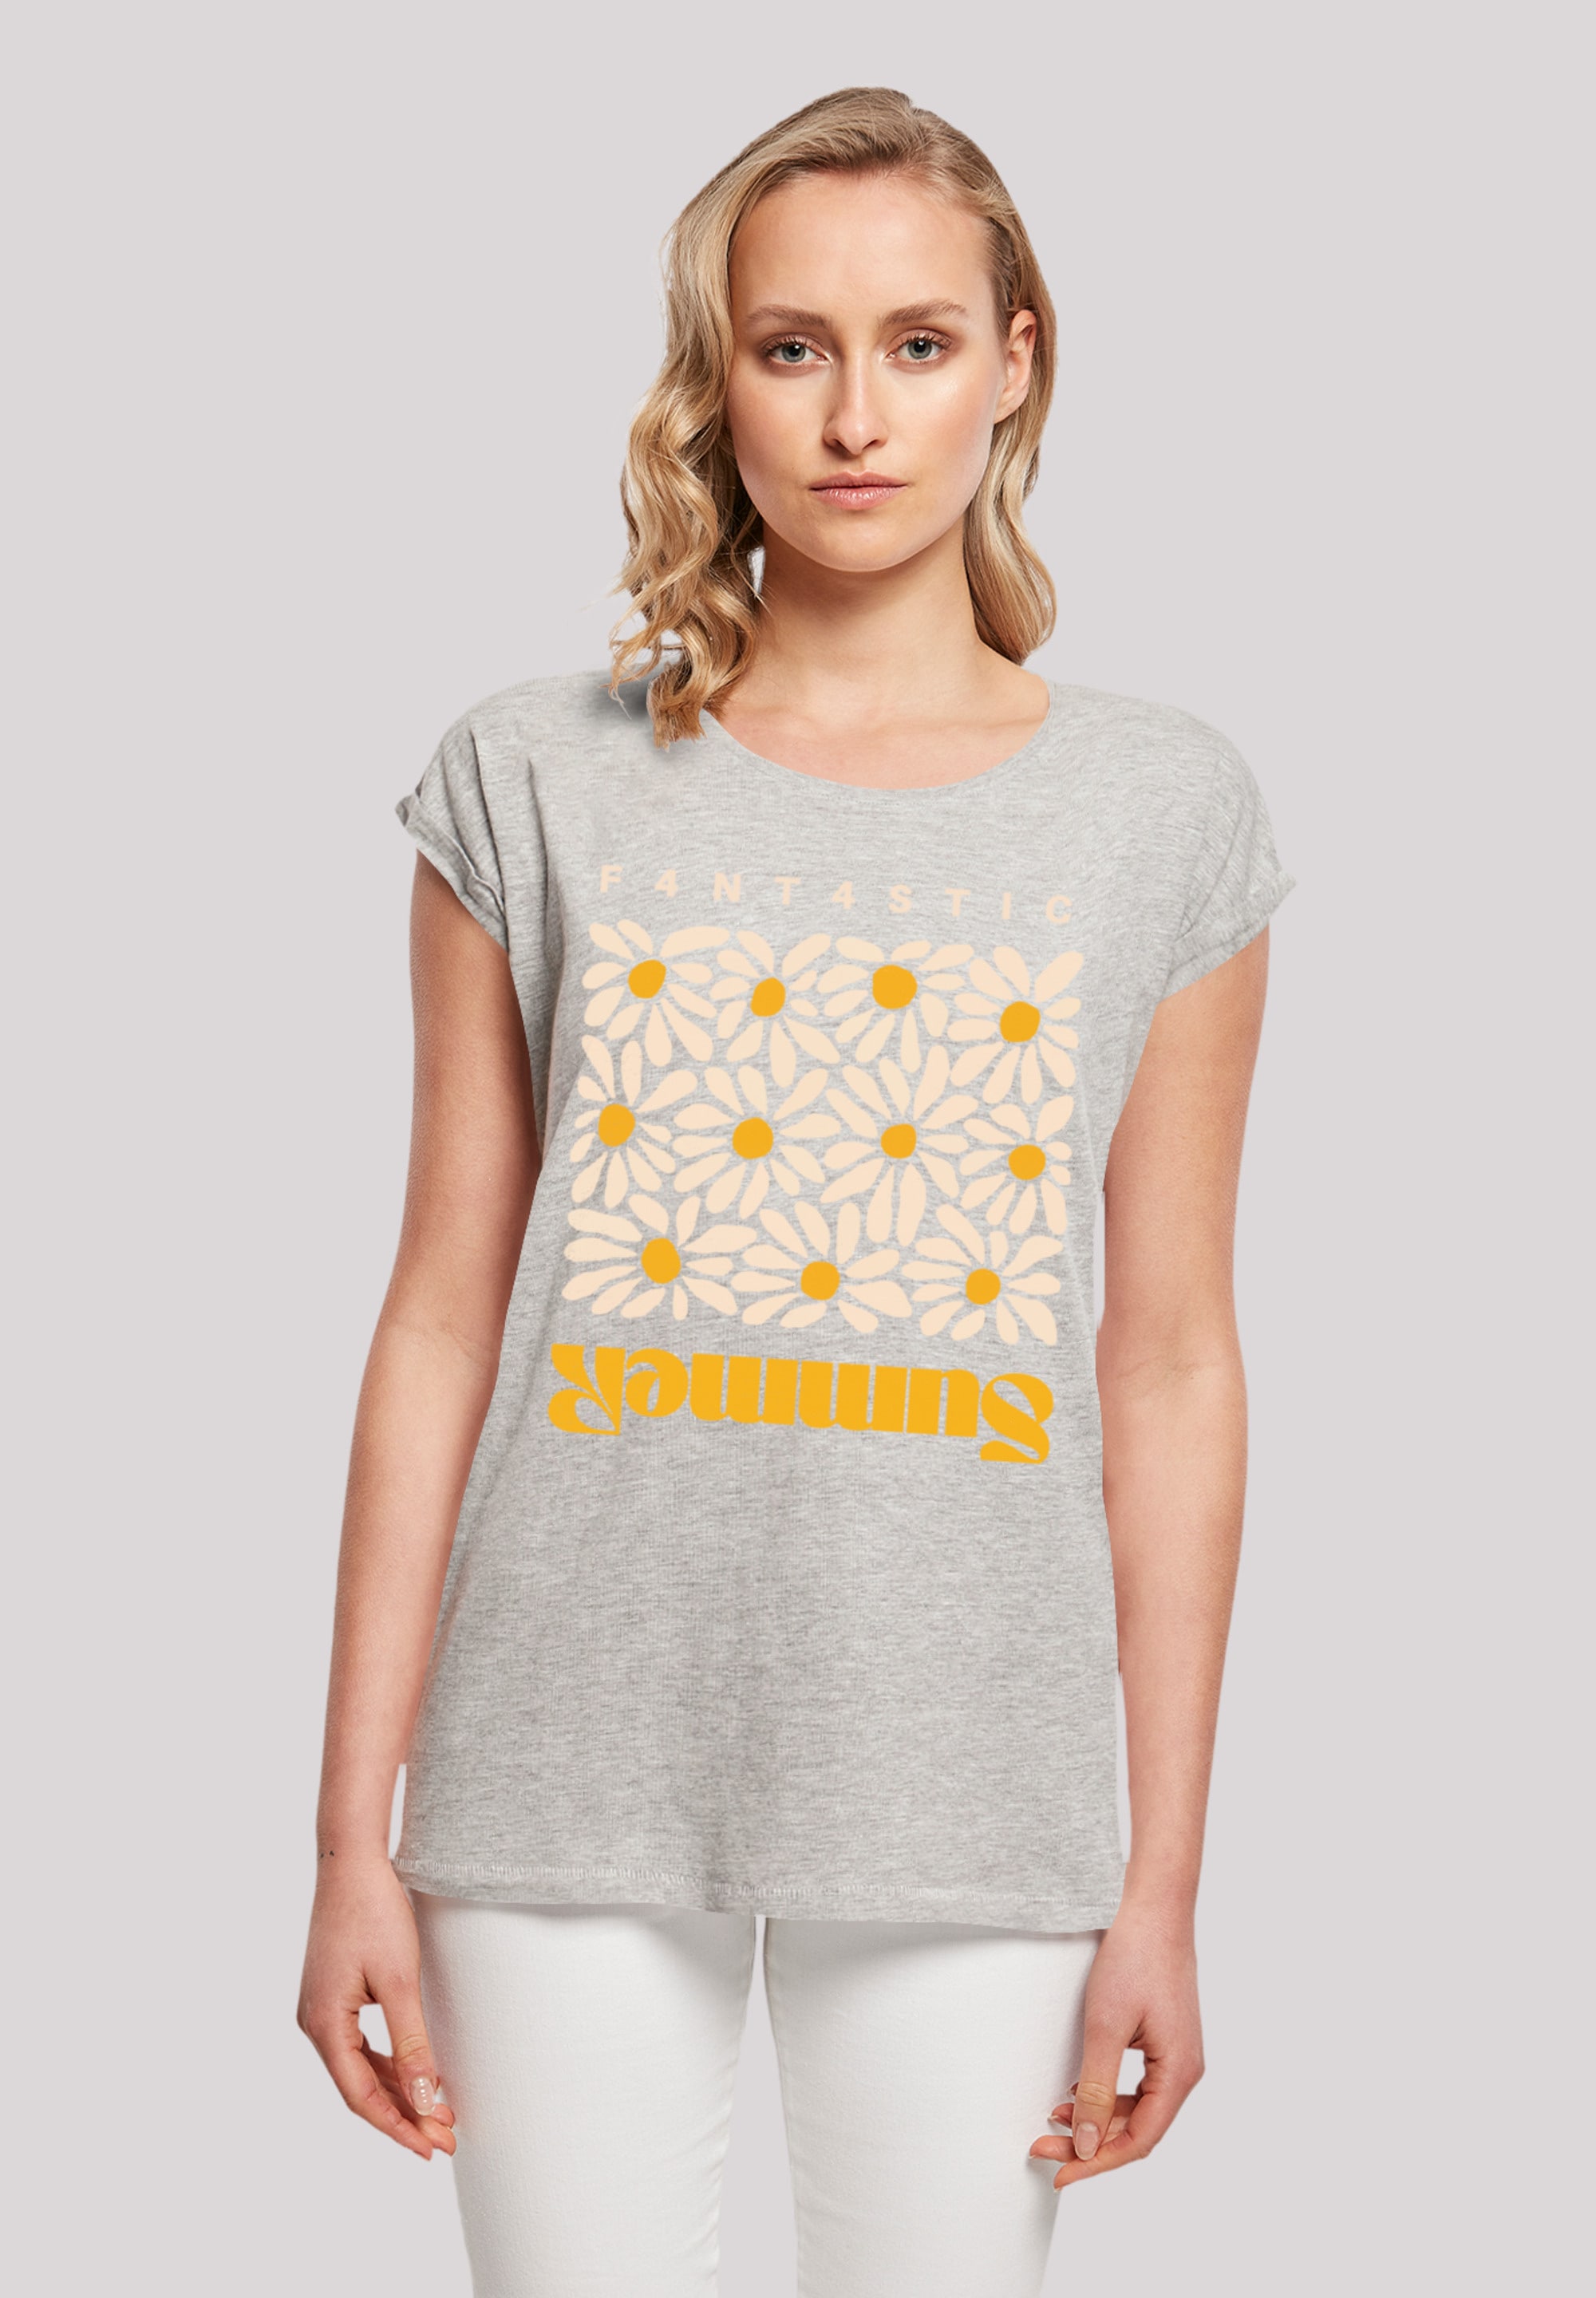 T-Shirt Sunflower«, Print F4NT4STIC bestellen »Summer